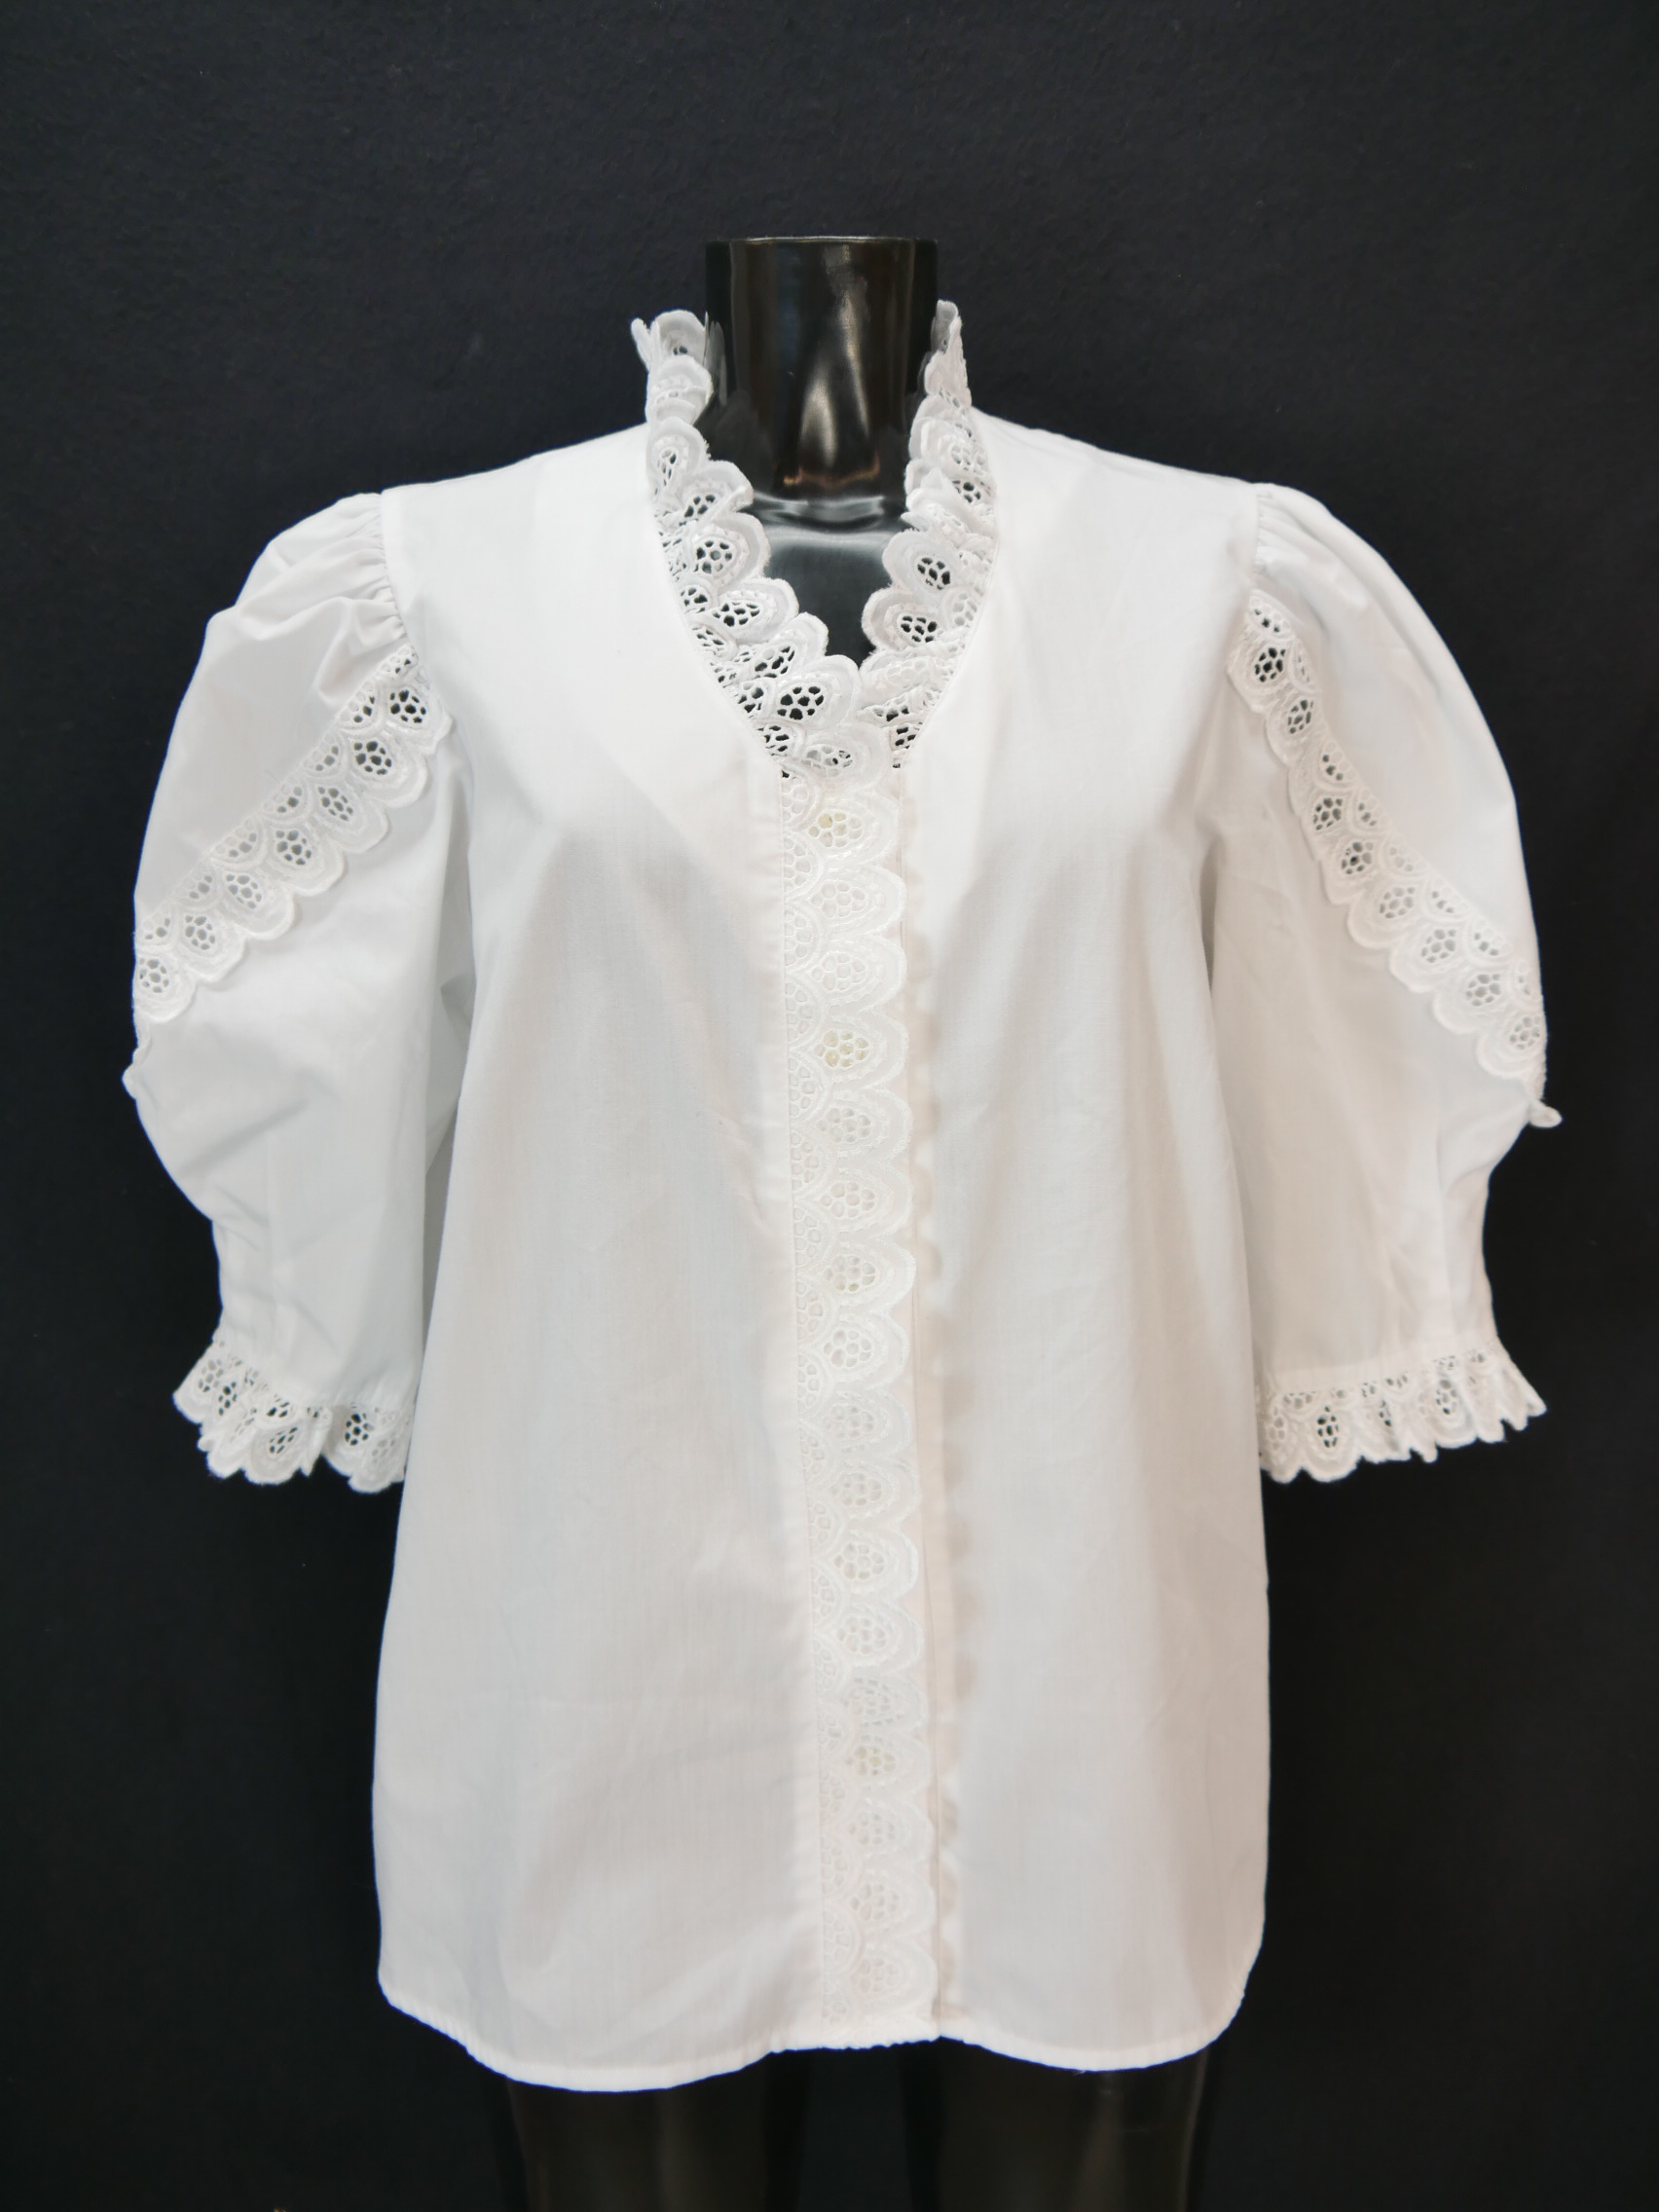 Size 48 Trachten blouse white Blouse Diolen cotton blend with lace TB8628